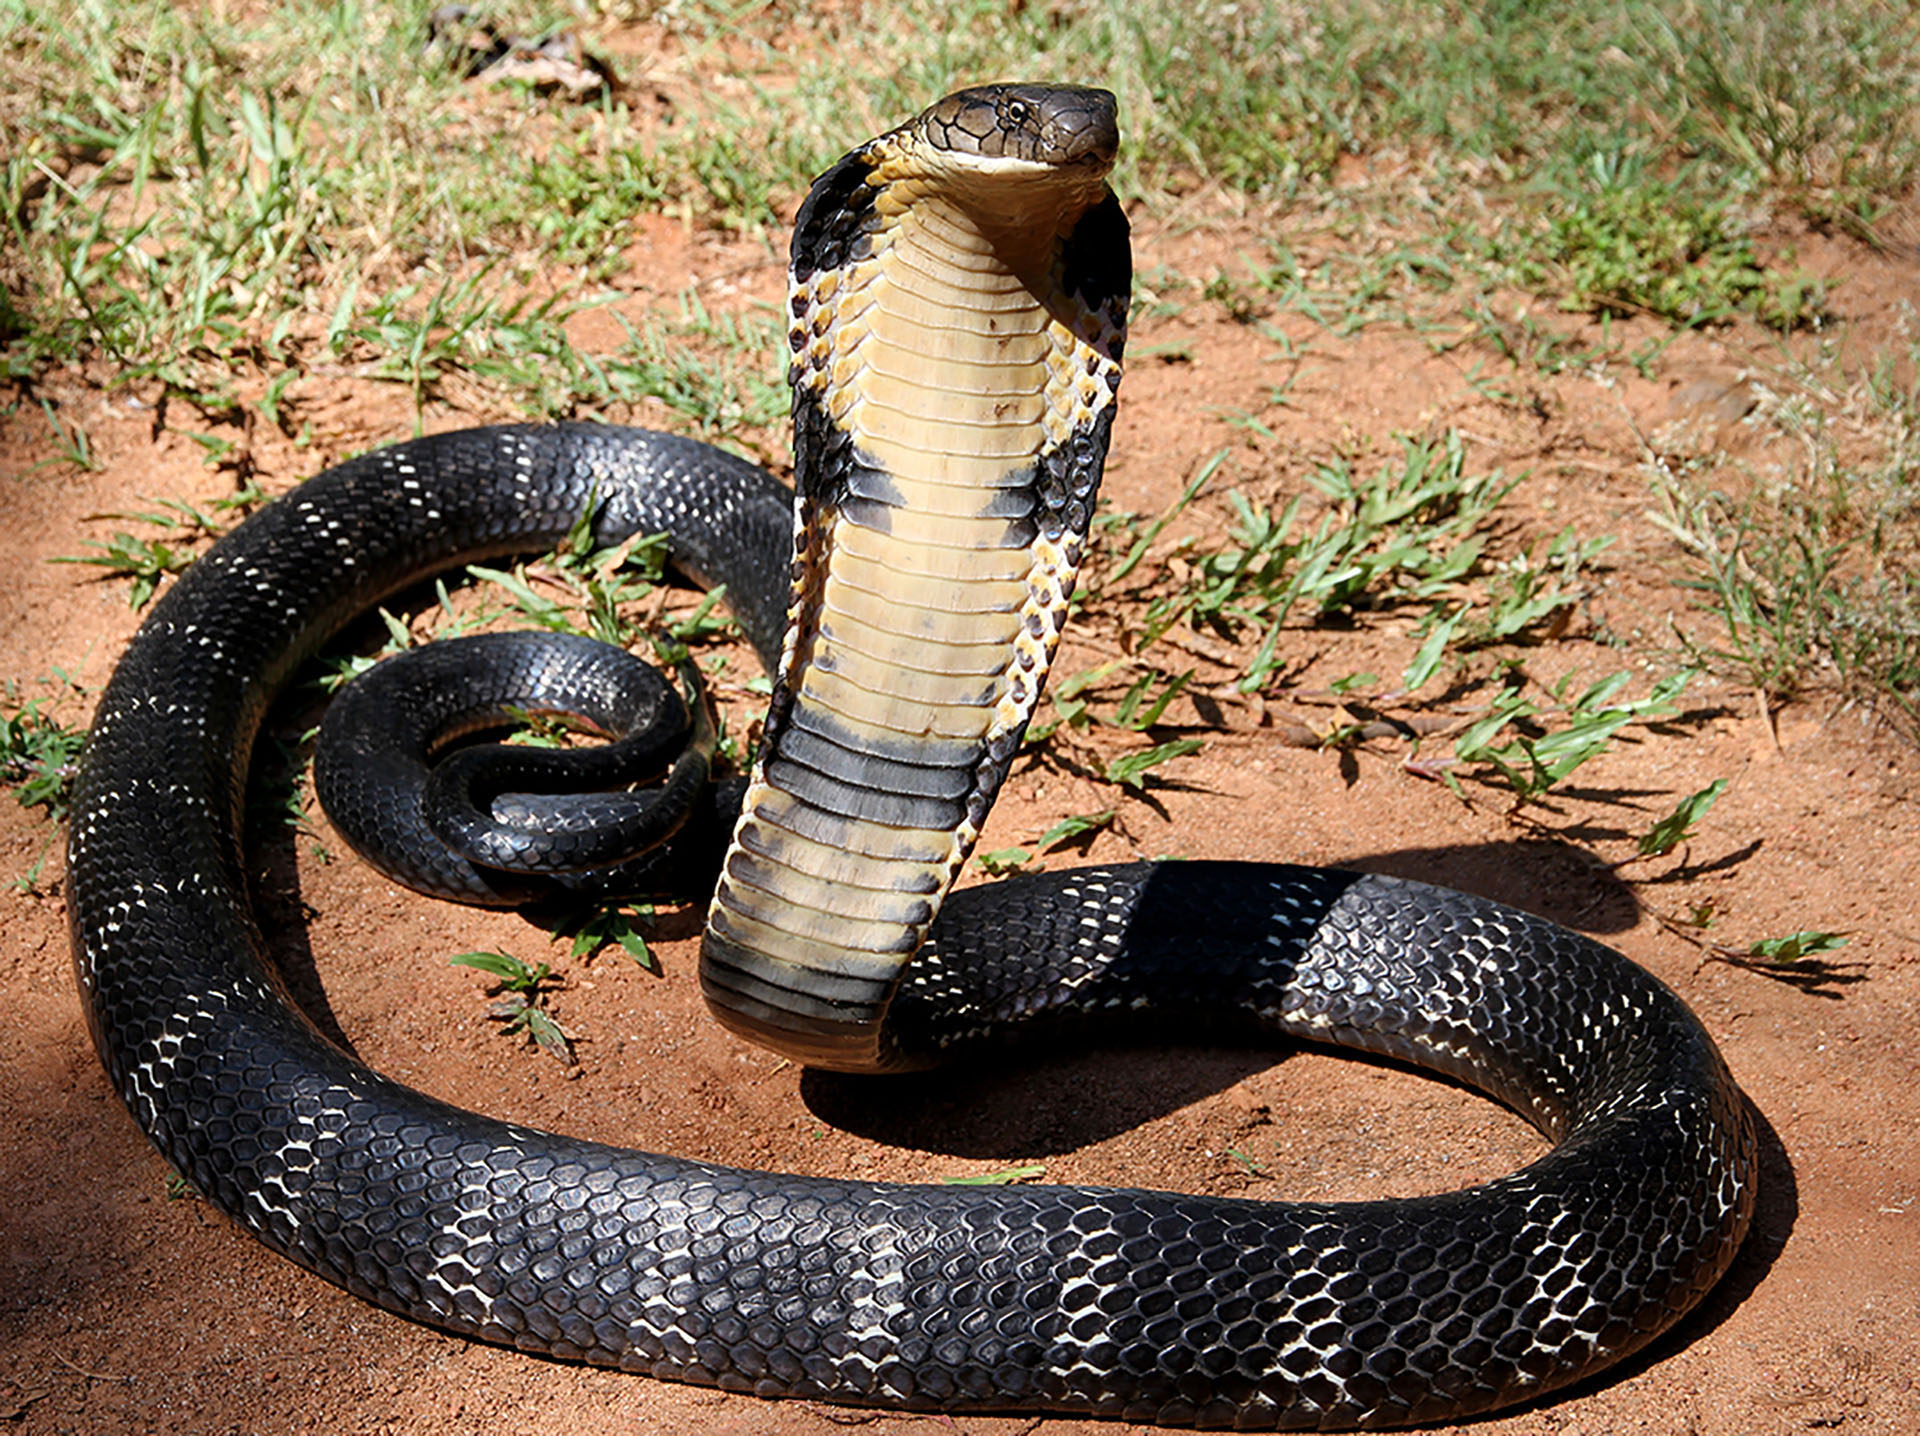 Le Cobra Royal Plus Grand Serpent Venimeux Au Monde Photos Futura